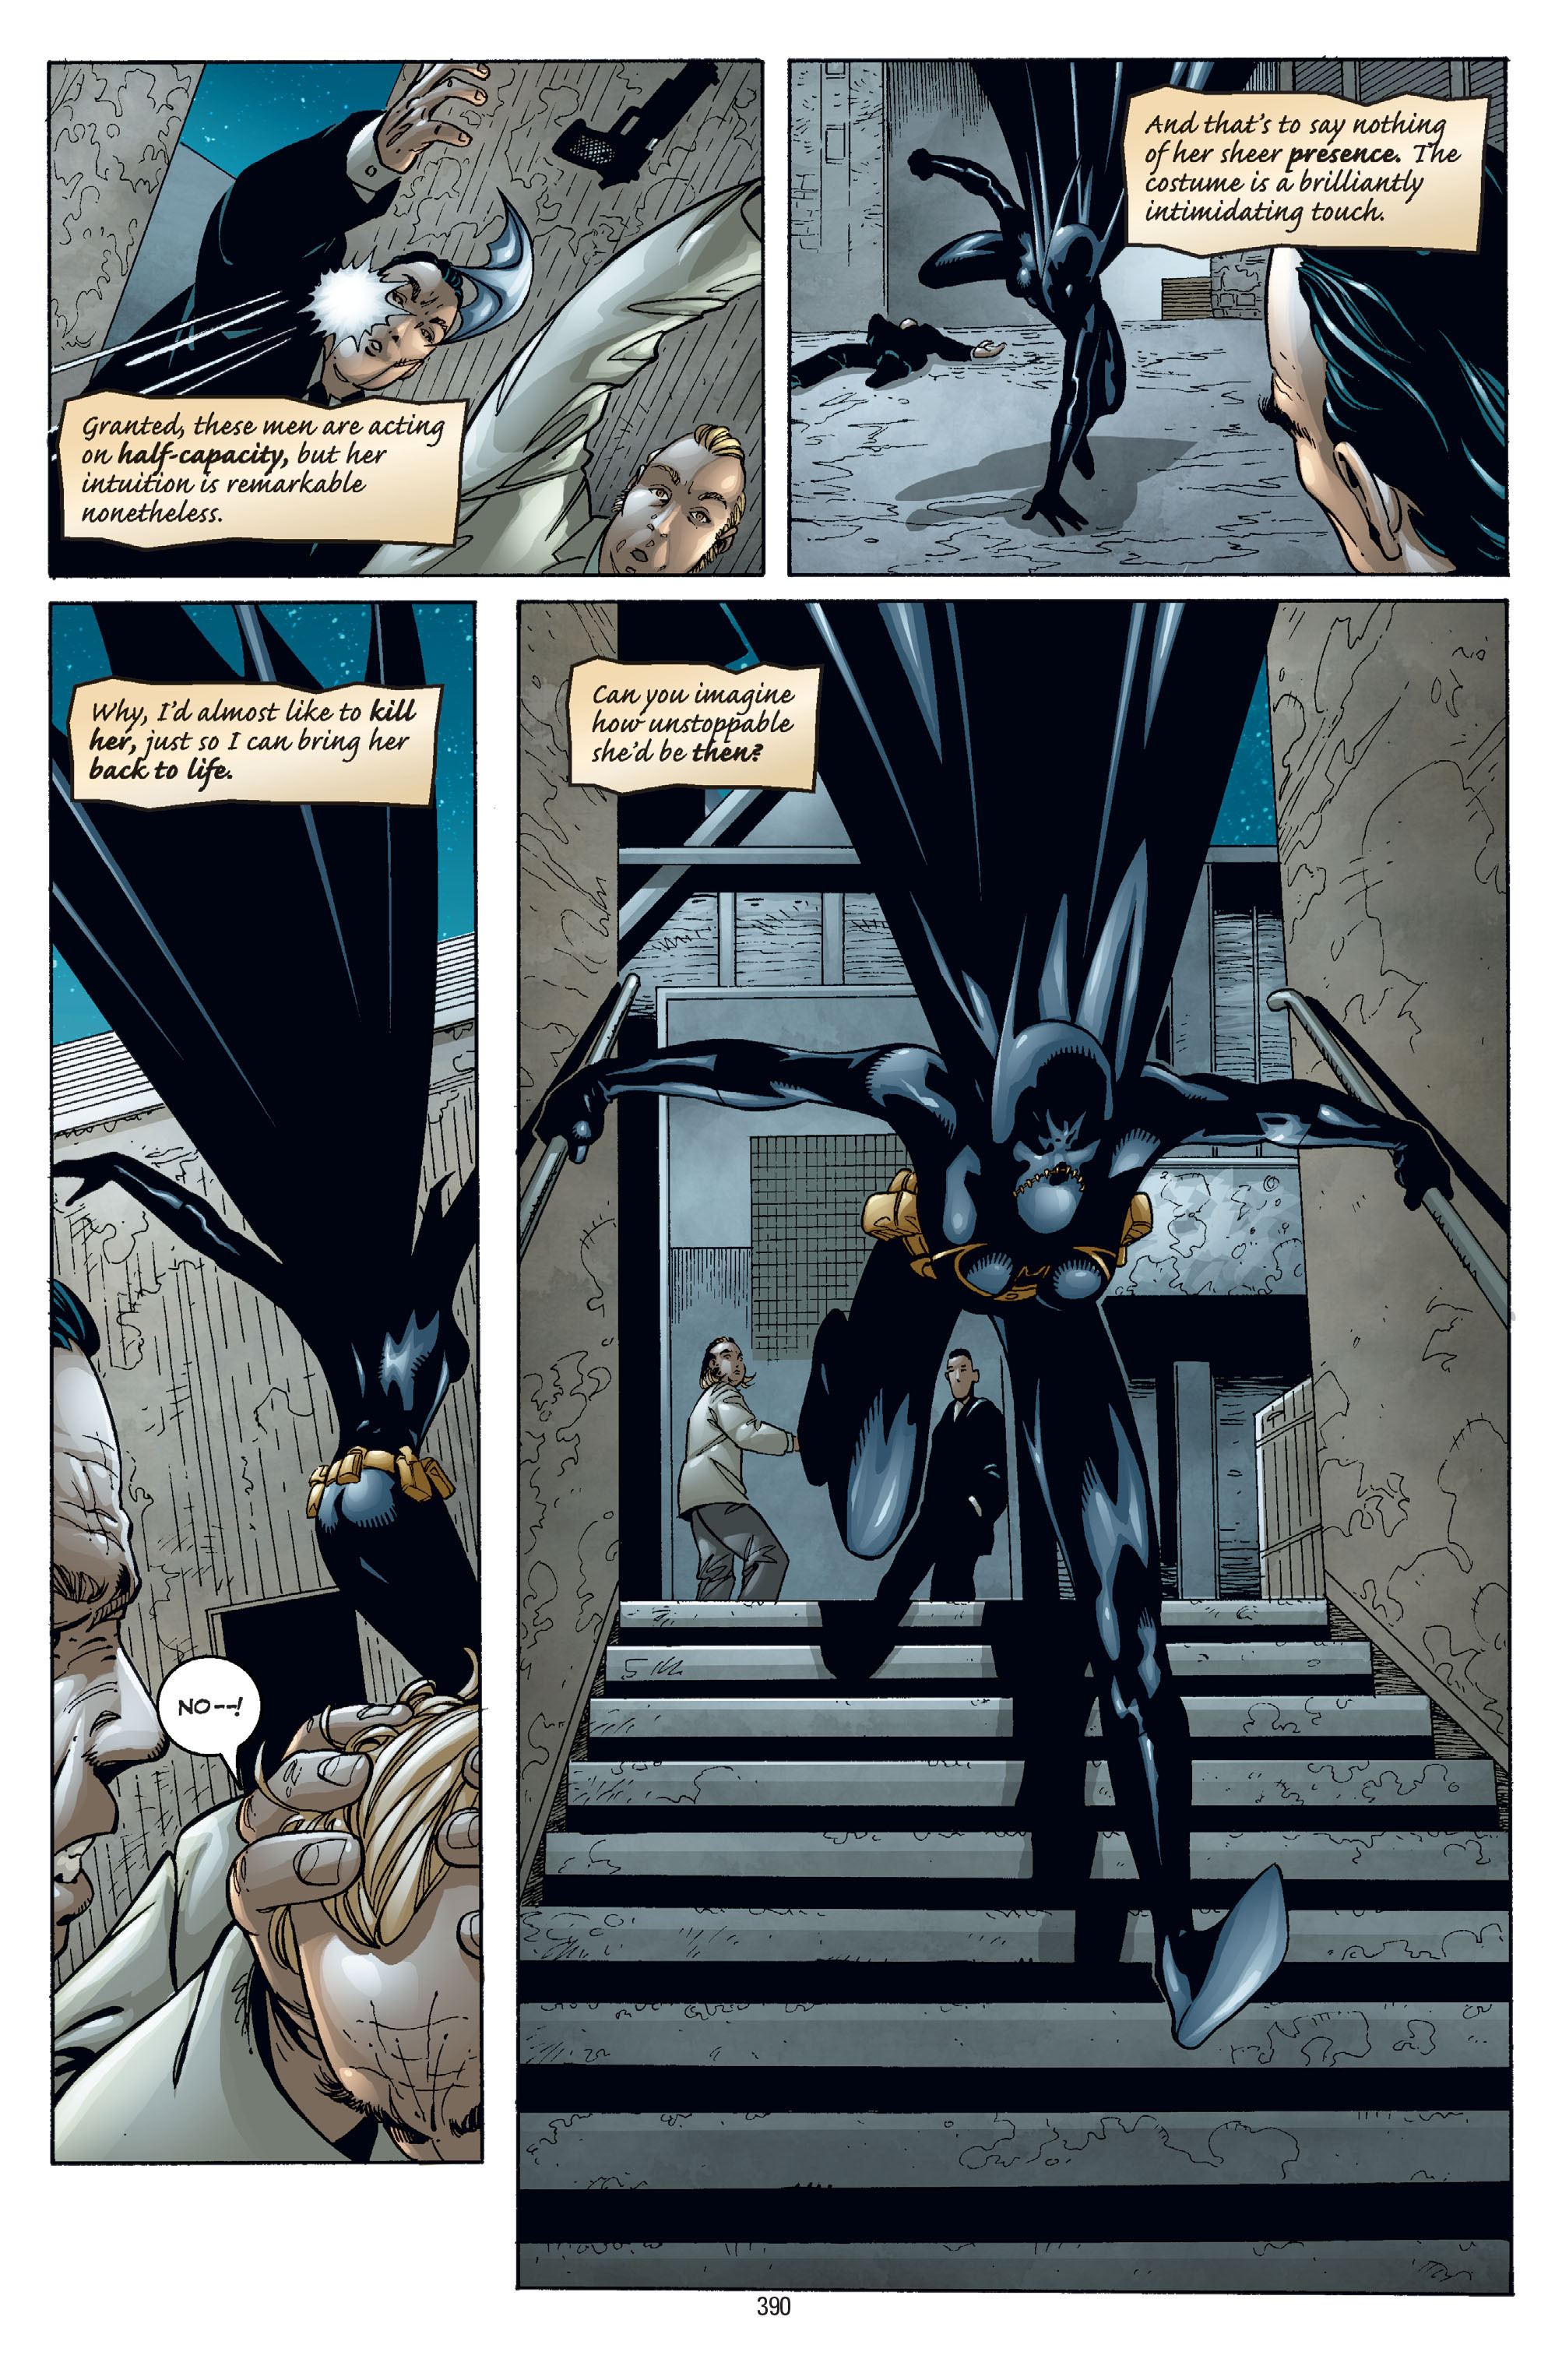 DC Comics/Dark Horse Comics: Justice League Full #1 - English 380